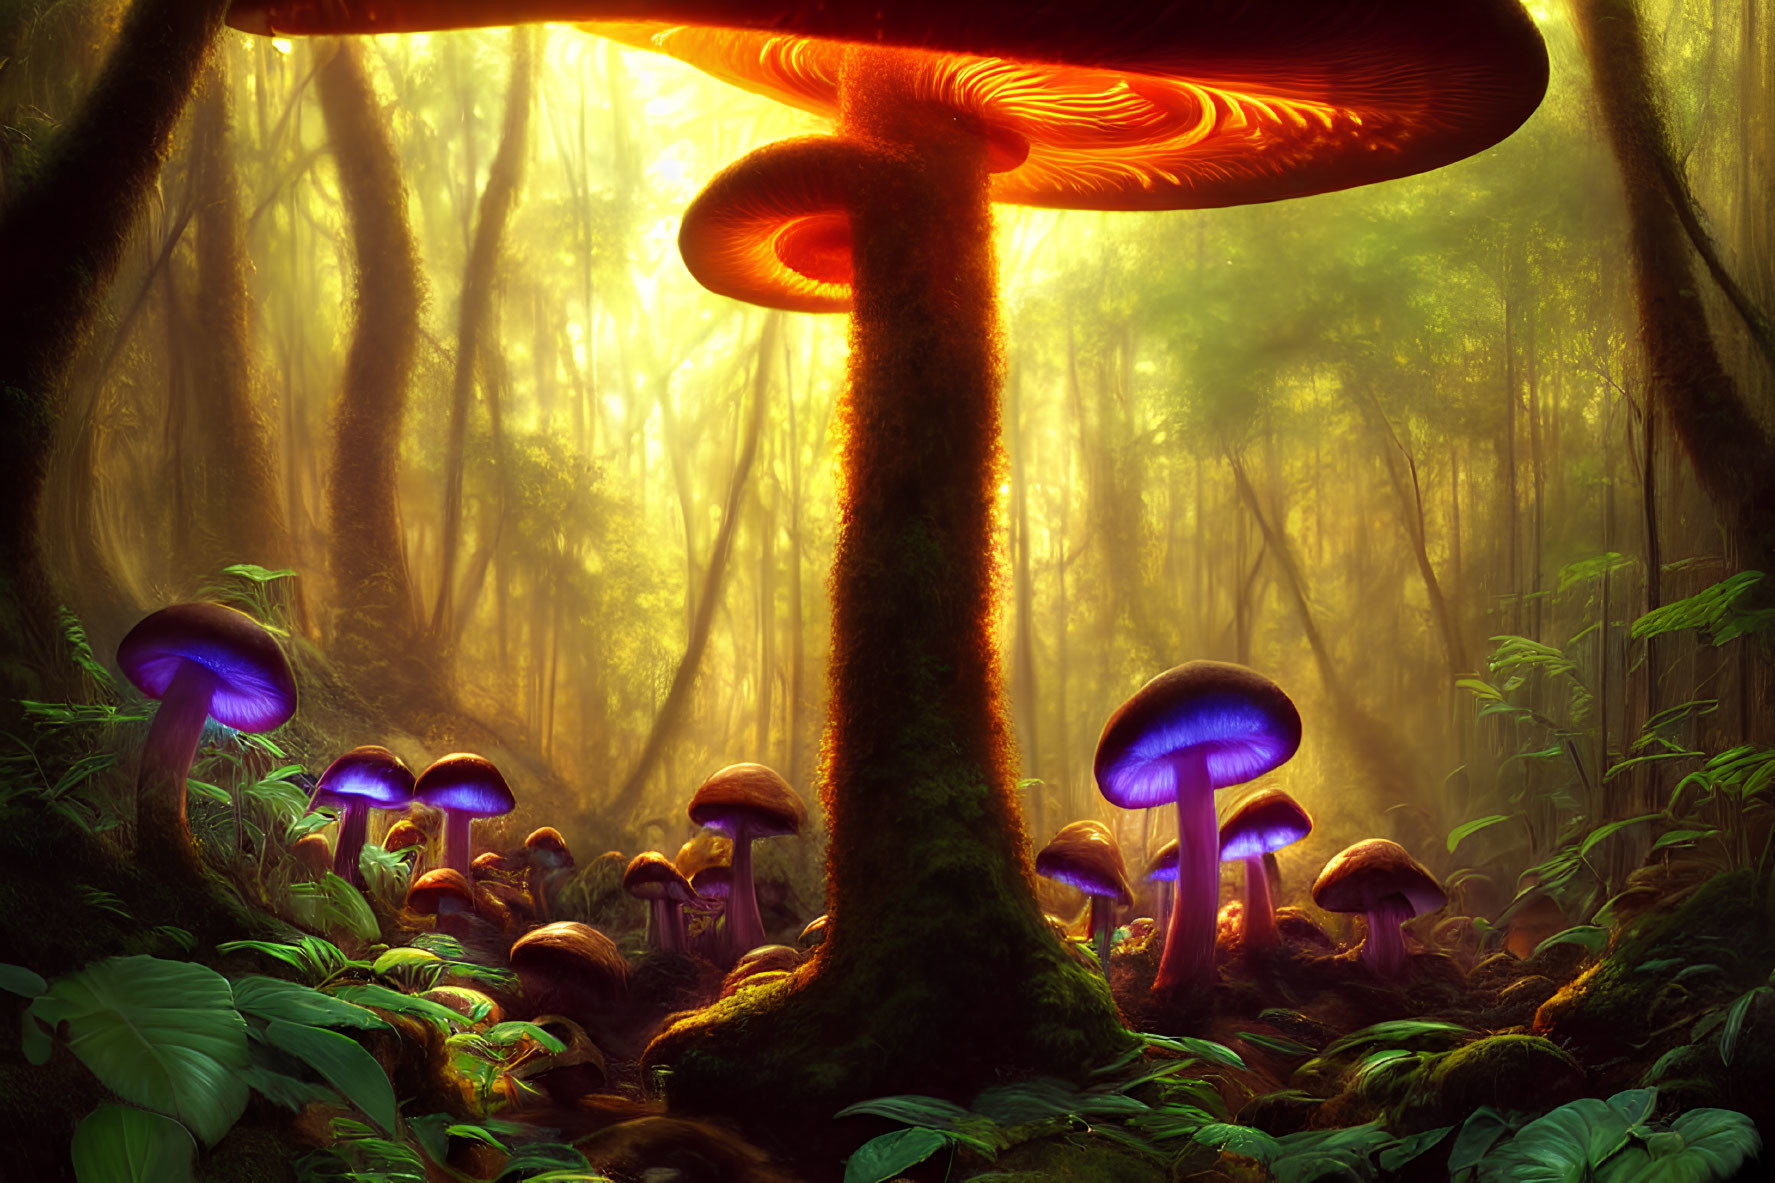 Luminous oversized mushrooms in enchanting forest scene